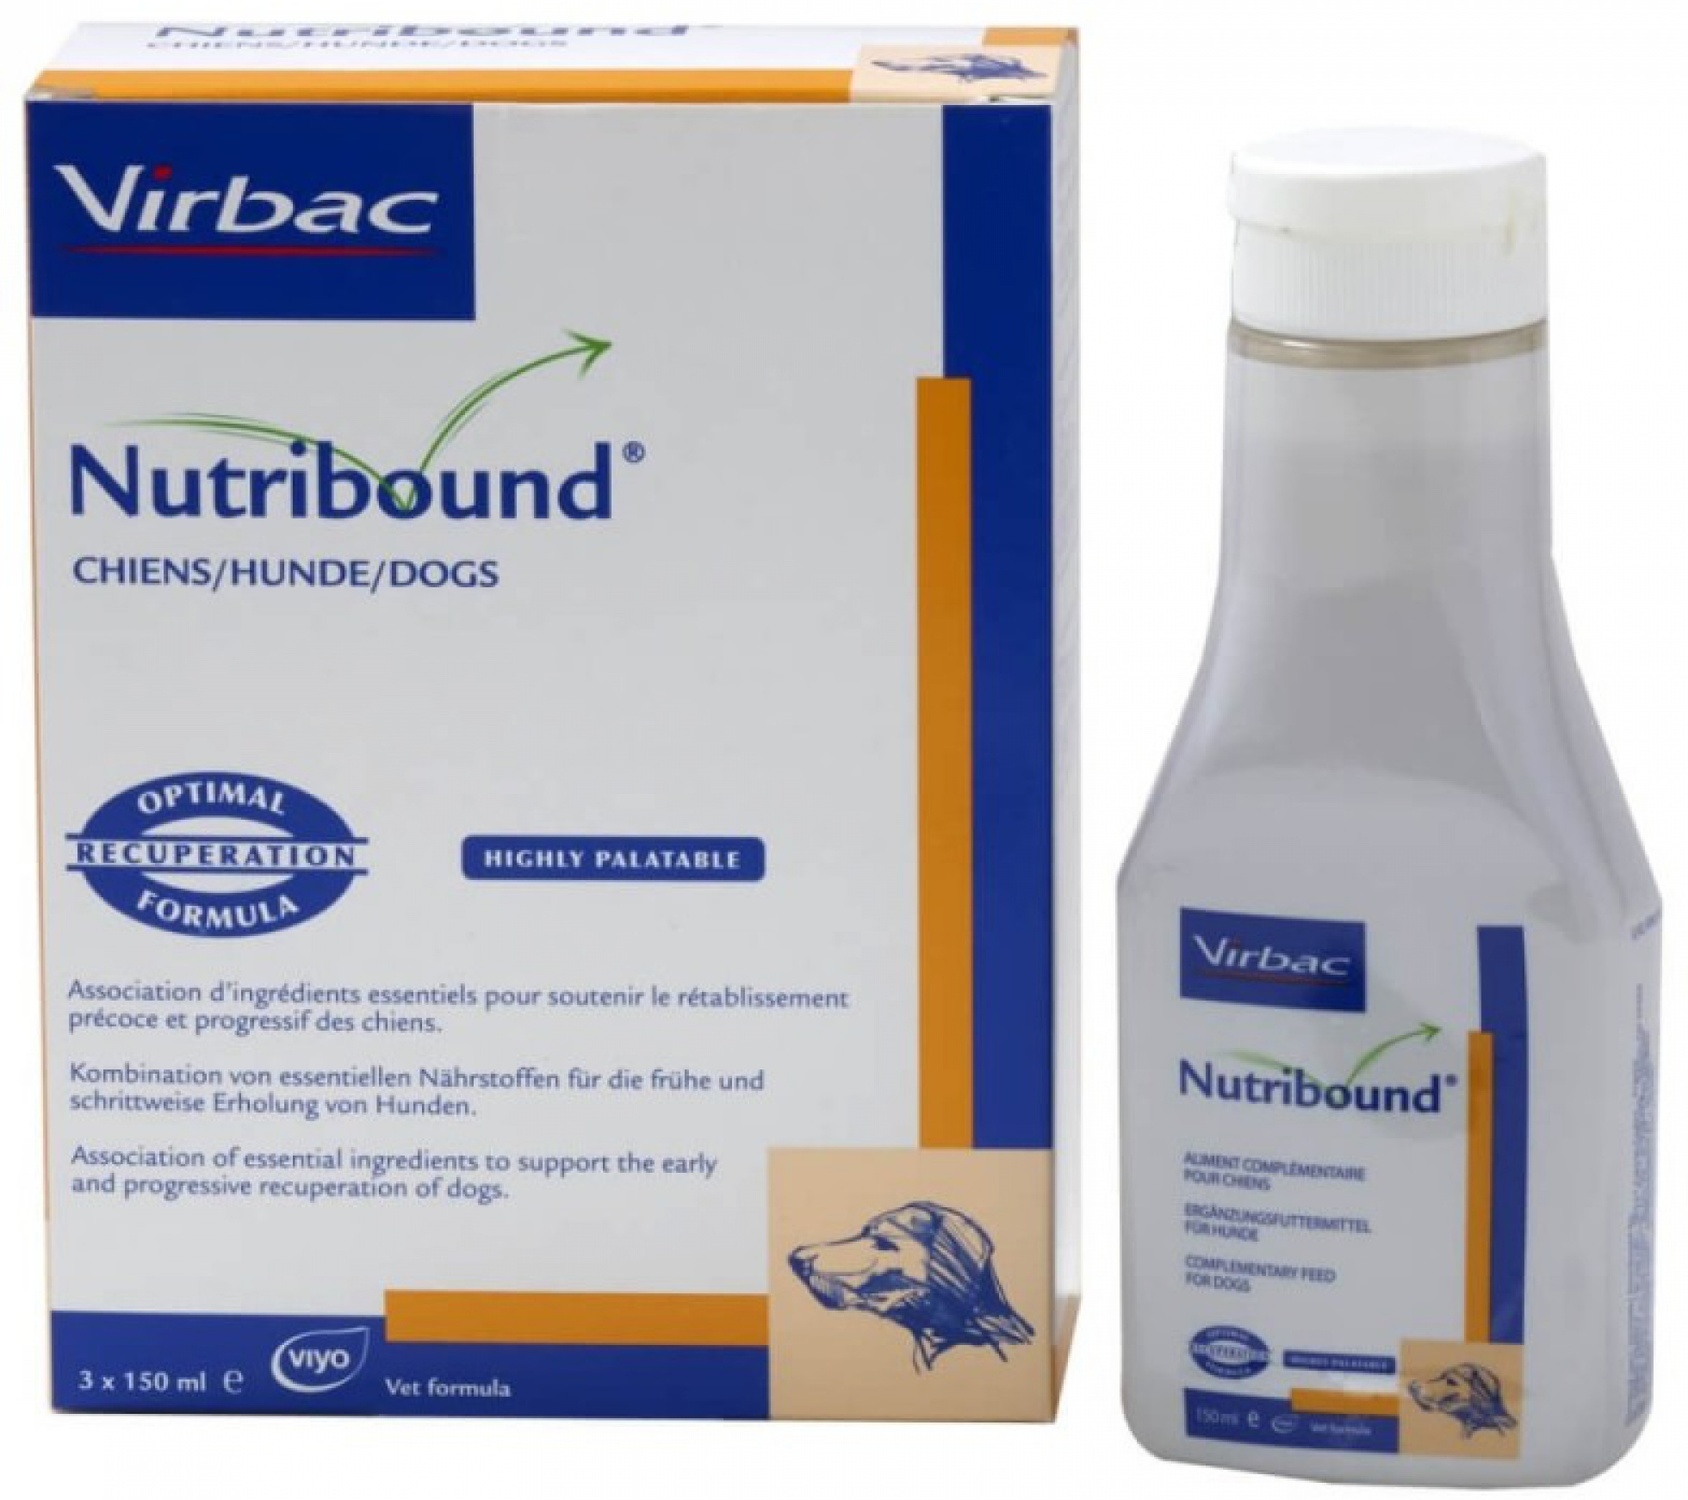 Virbac Nutribound soluție orală aromatizată pentru pisici